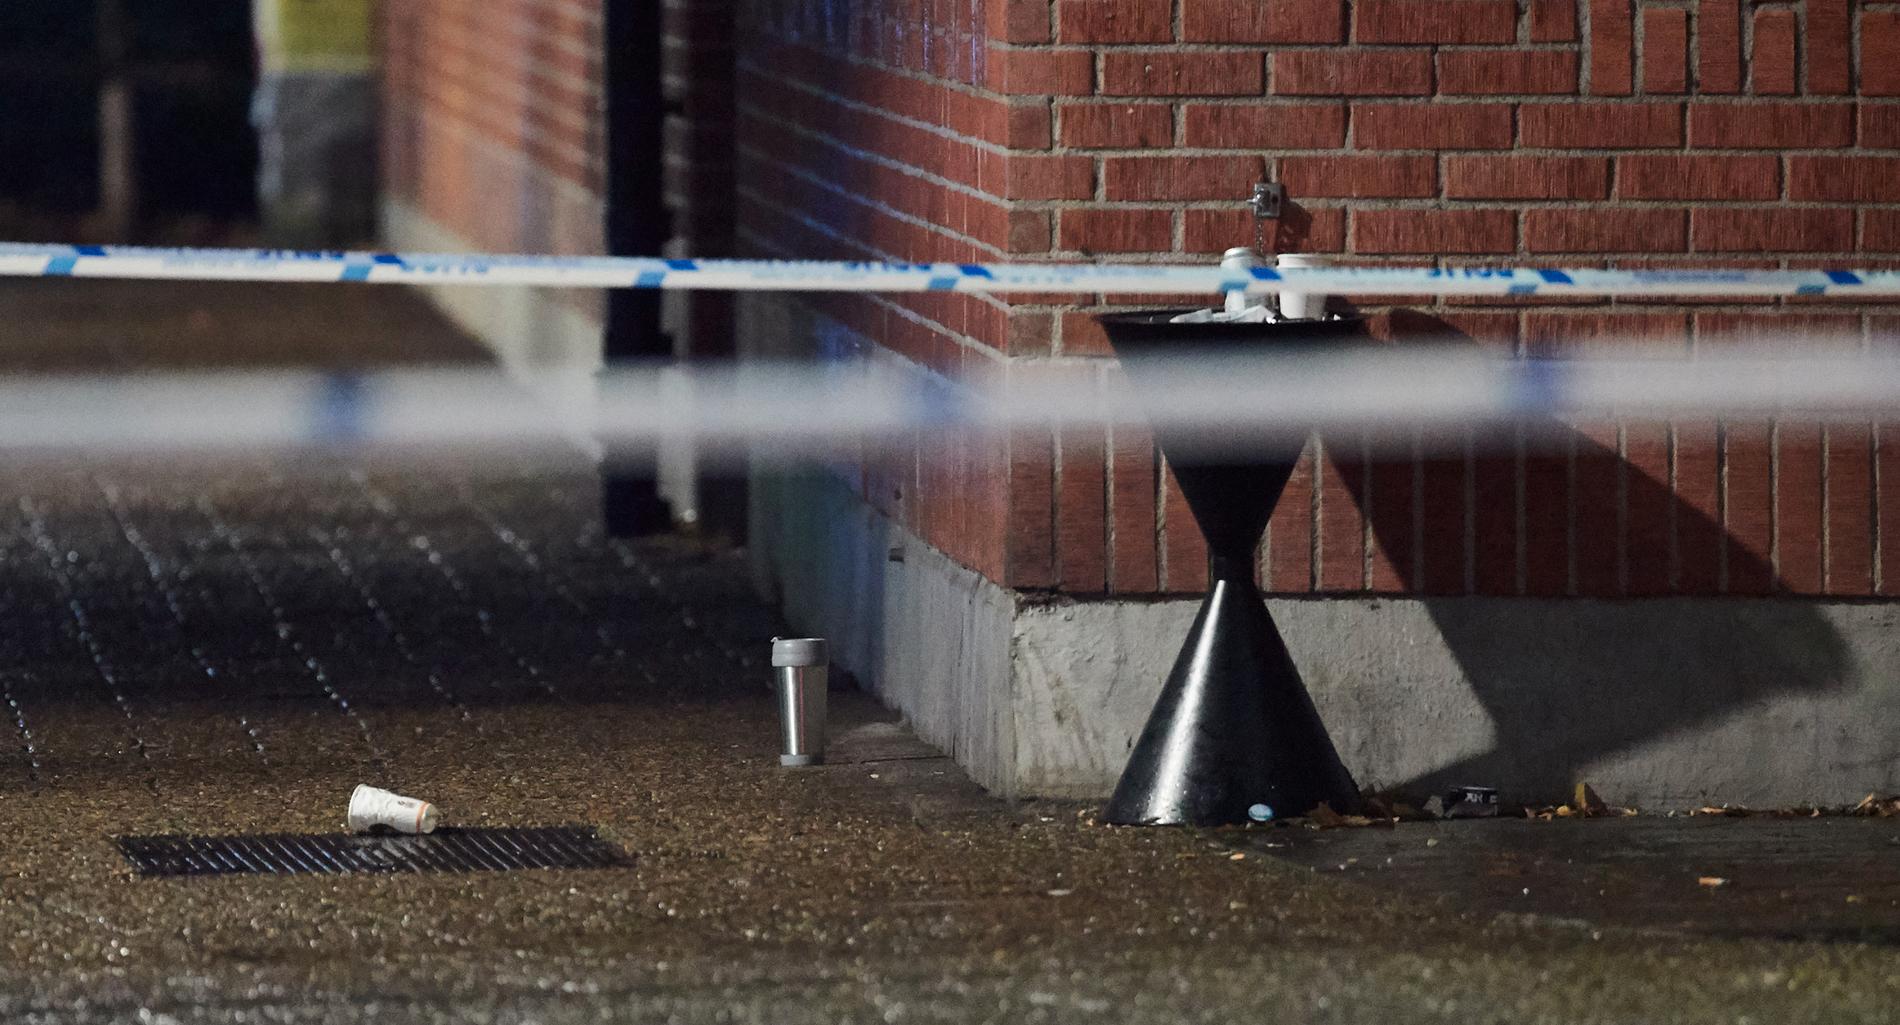 Ett område på Kaptensgatan i Malmö spärrades av sedan ett misstänkt farligt föremål anträffats i anslutning till ett hotells entré, men det visade sig bara handla om en termos i metall.